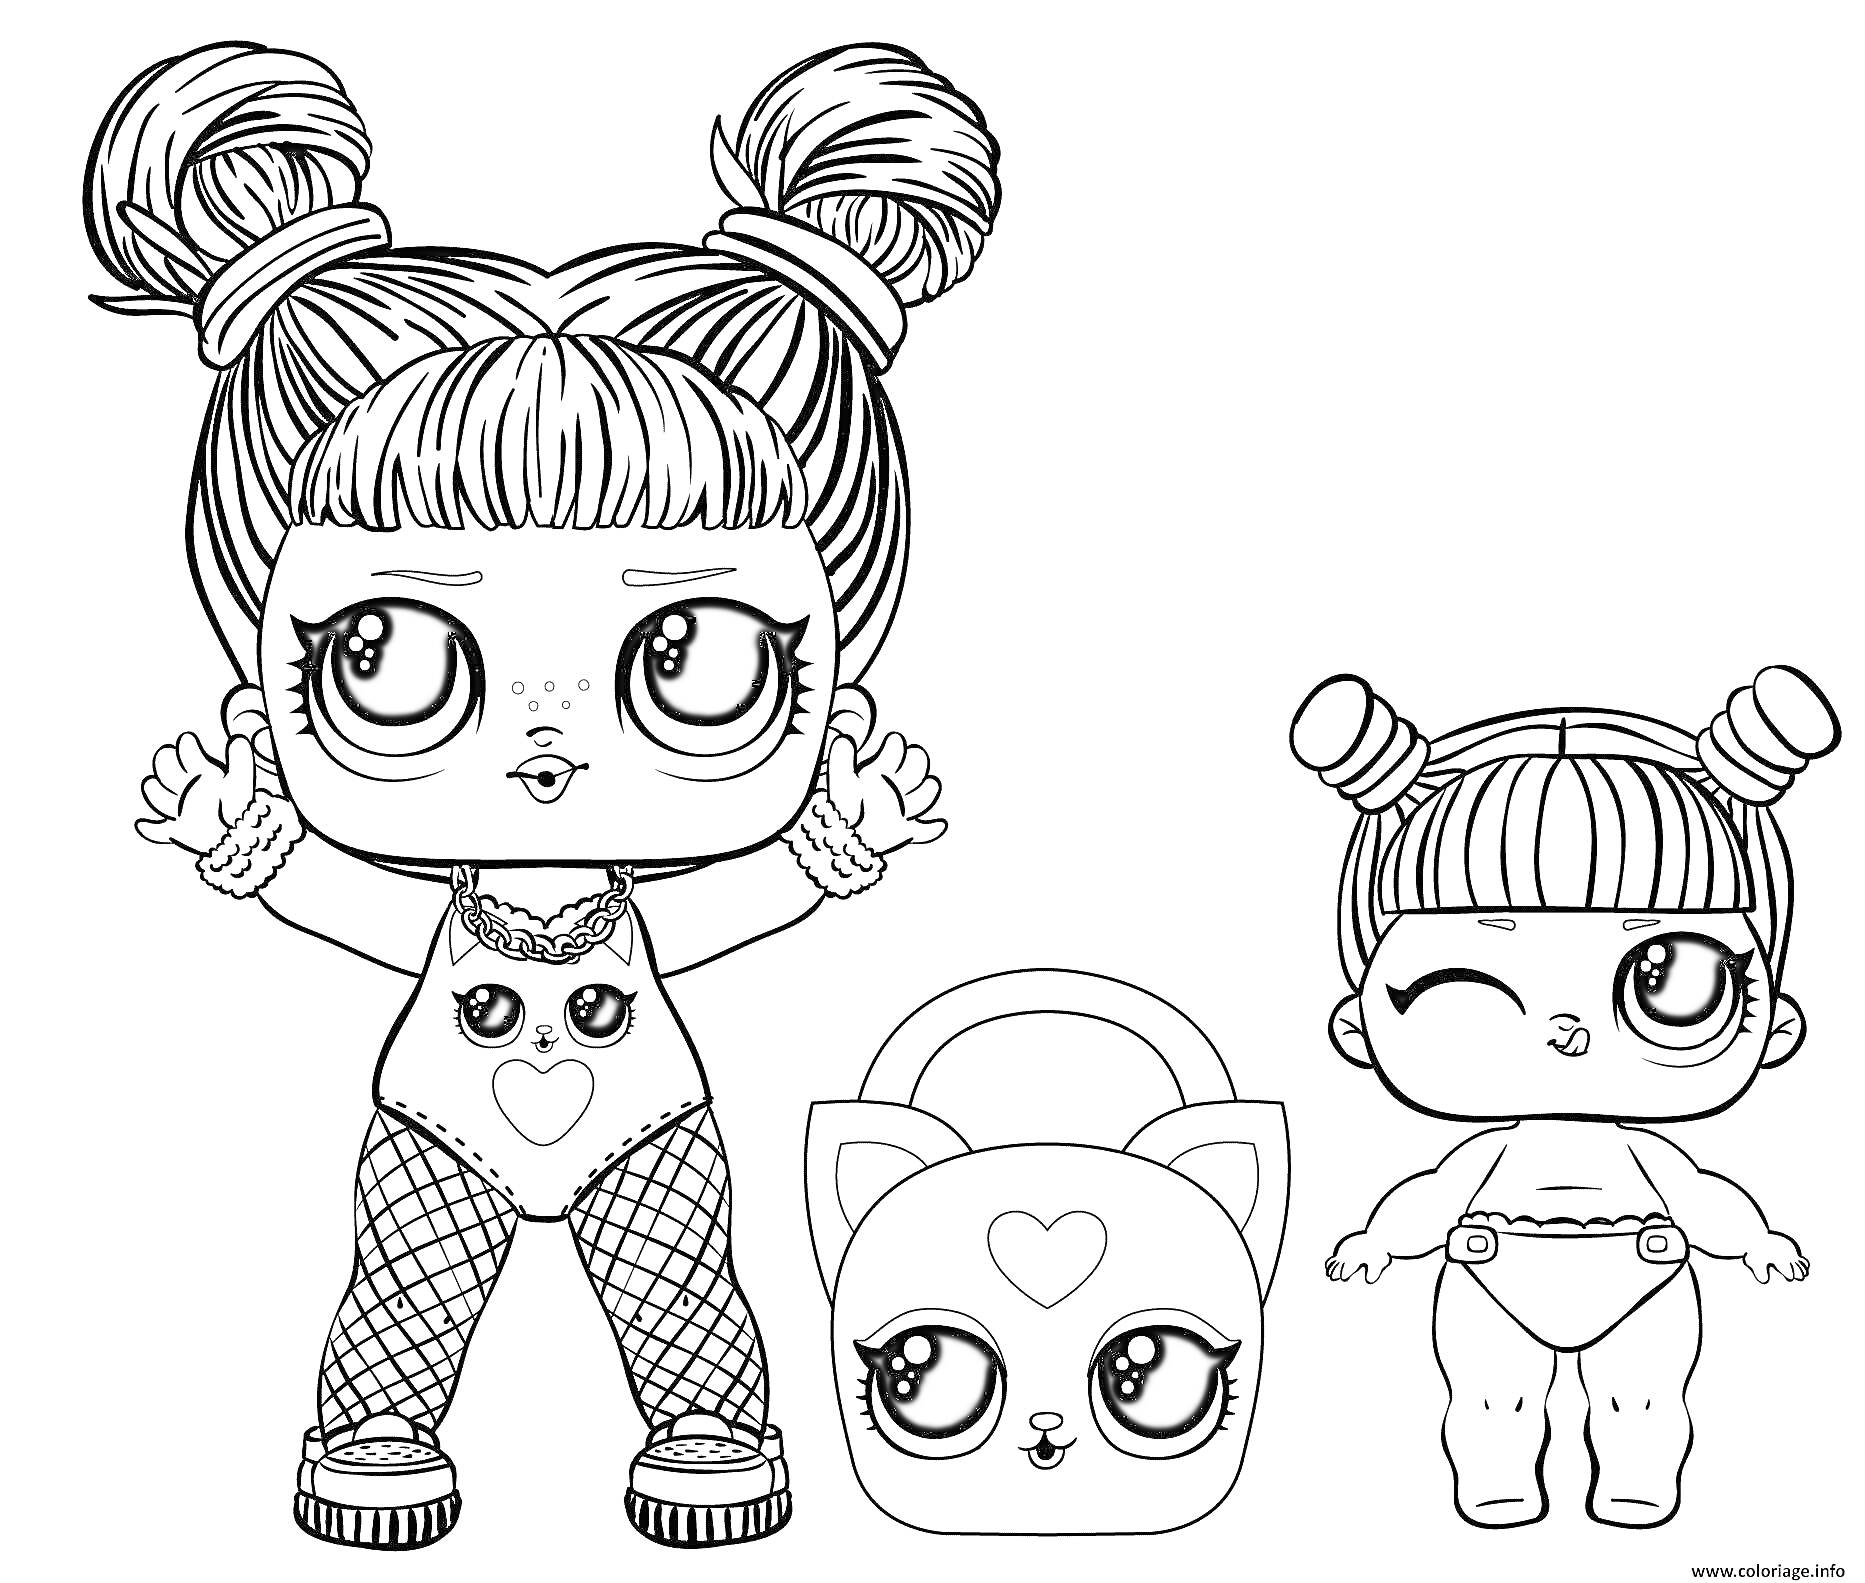 Раскраска две куклы ЛОЛ с большими глазами, маленькой сумочкой и забавными прическами